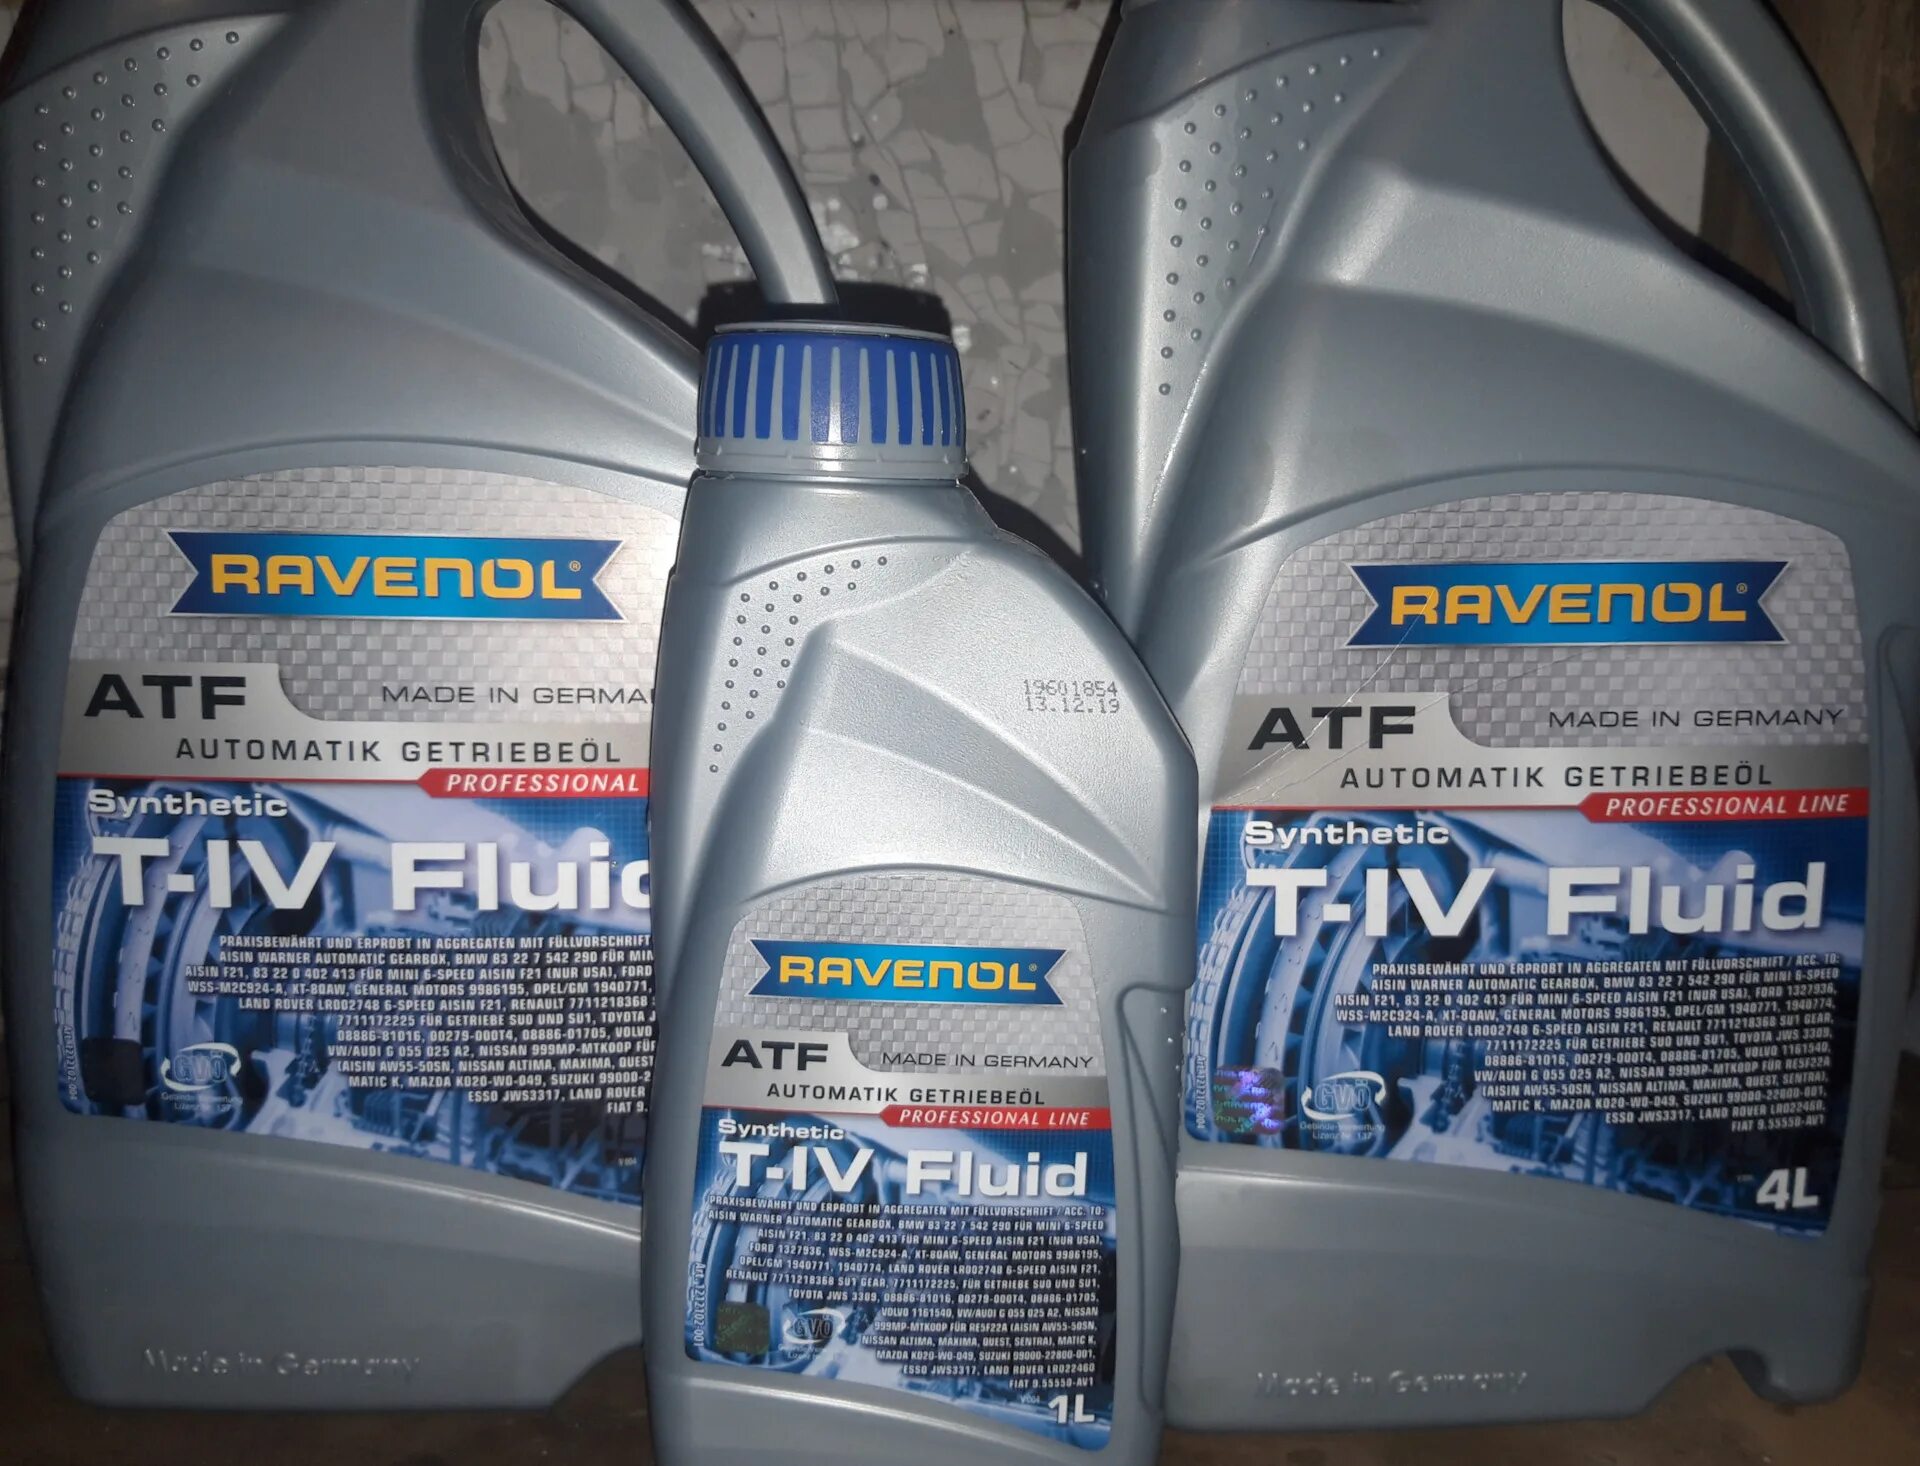 Ravenol t-4 Fluid. Ravenol ATF T-IV Fluid. Ravenol ATF Fluid. G055025a2 Ravenol.